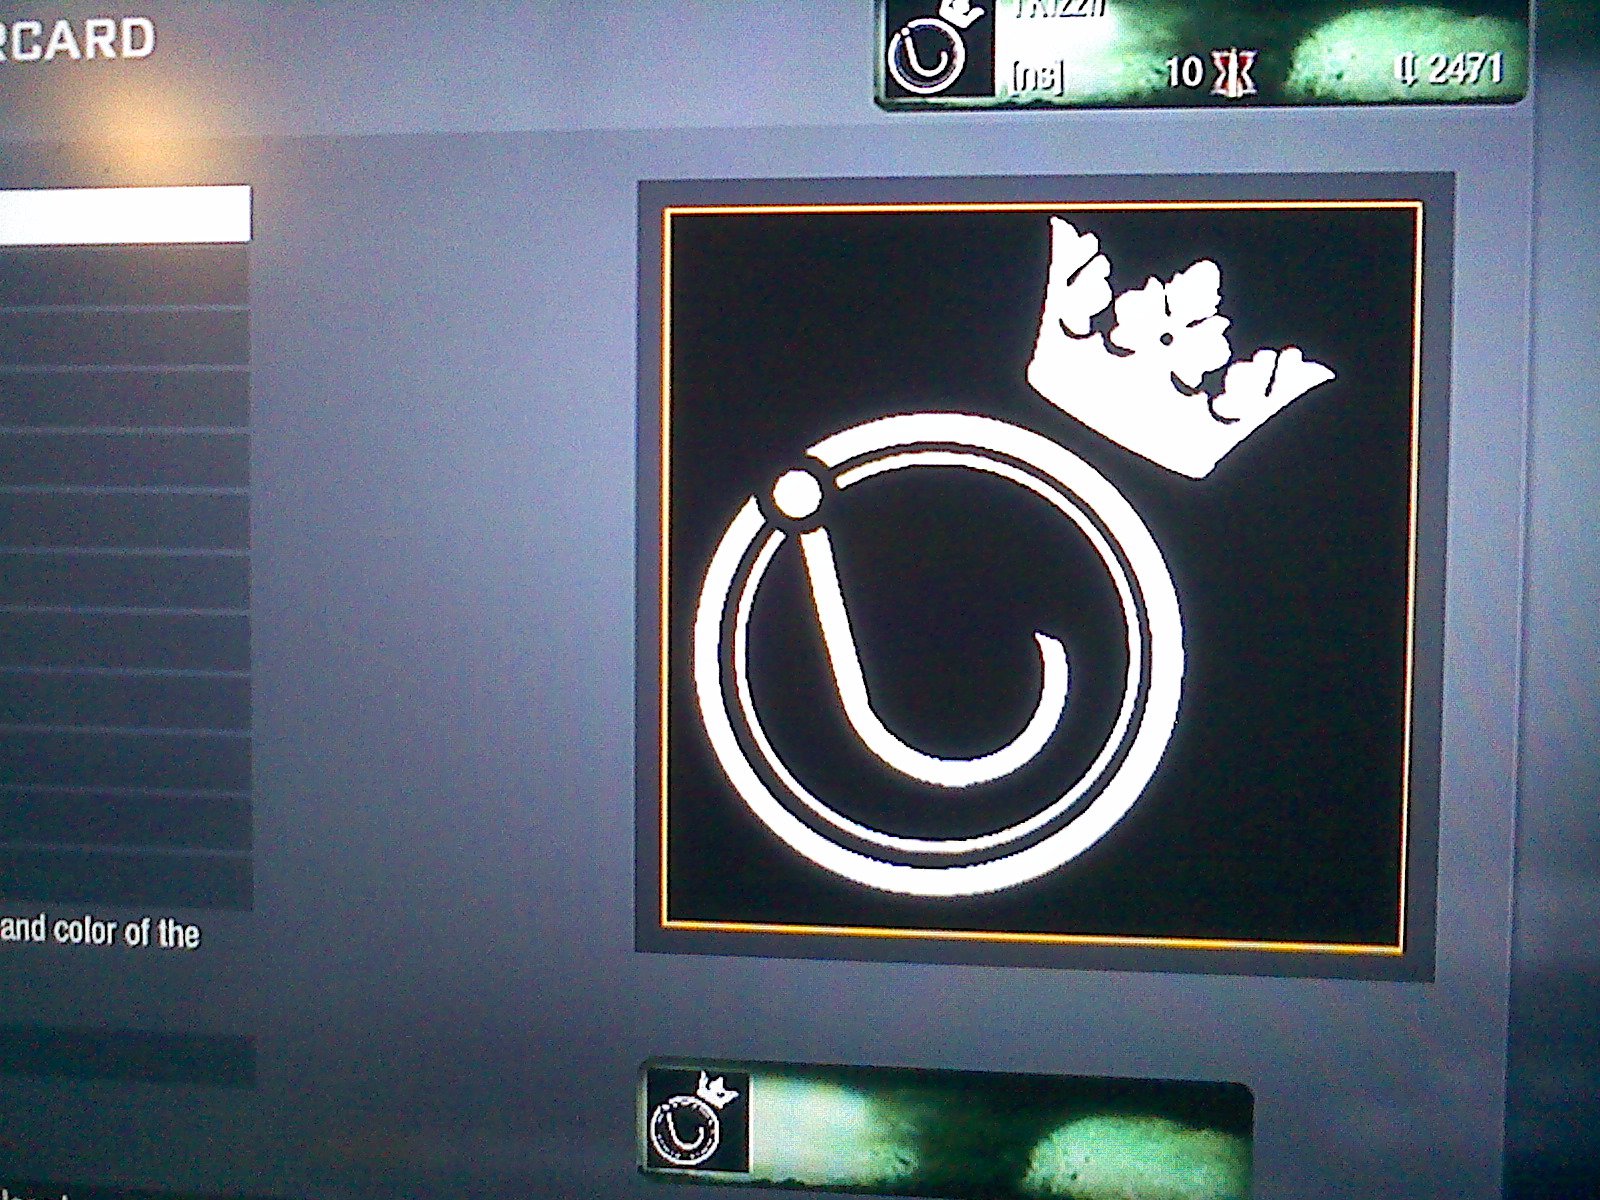 Black ops emblem